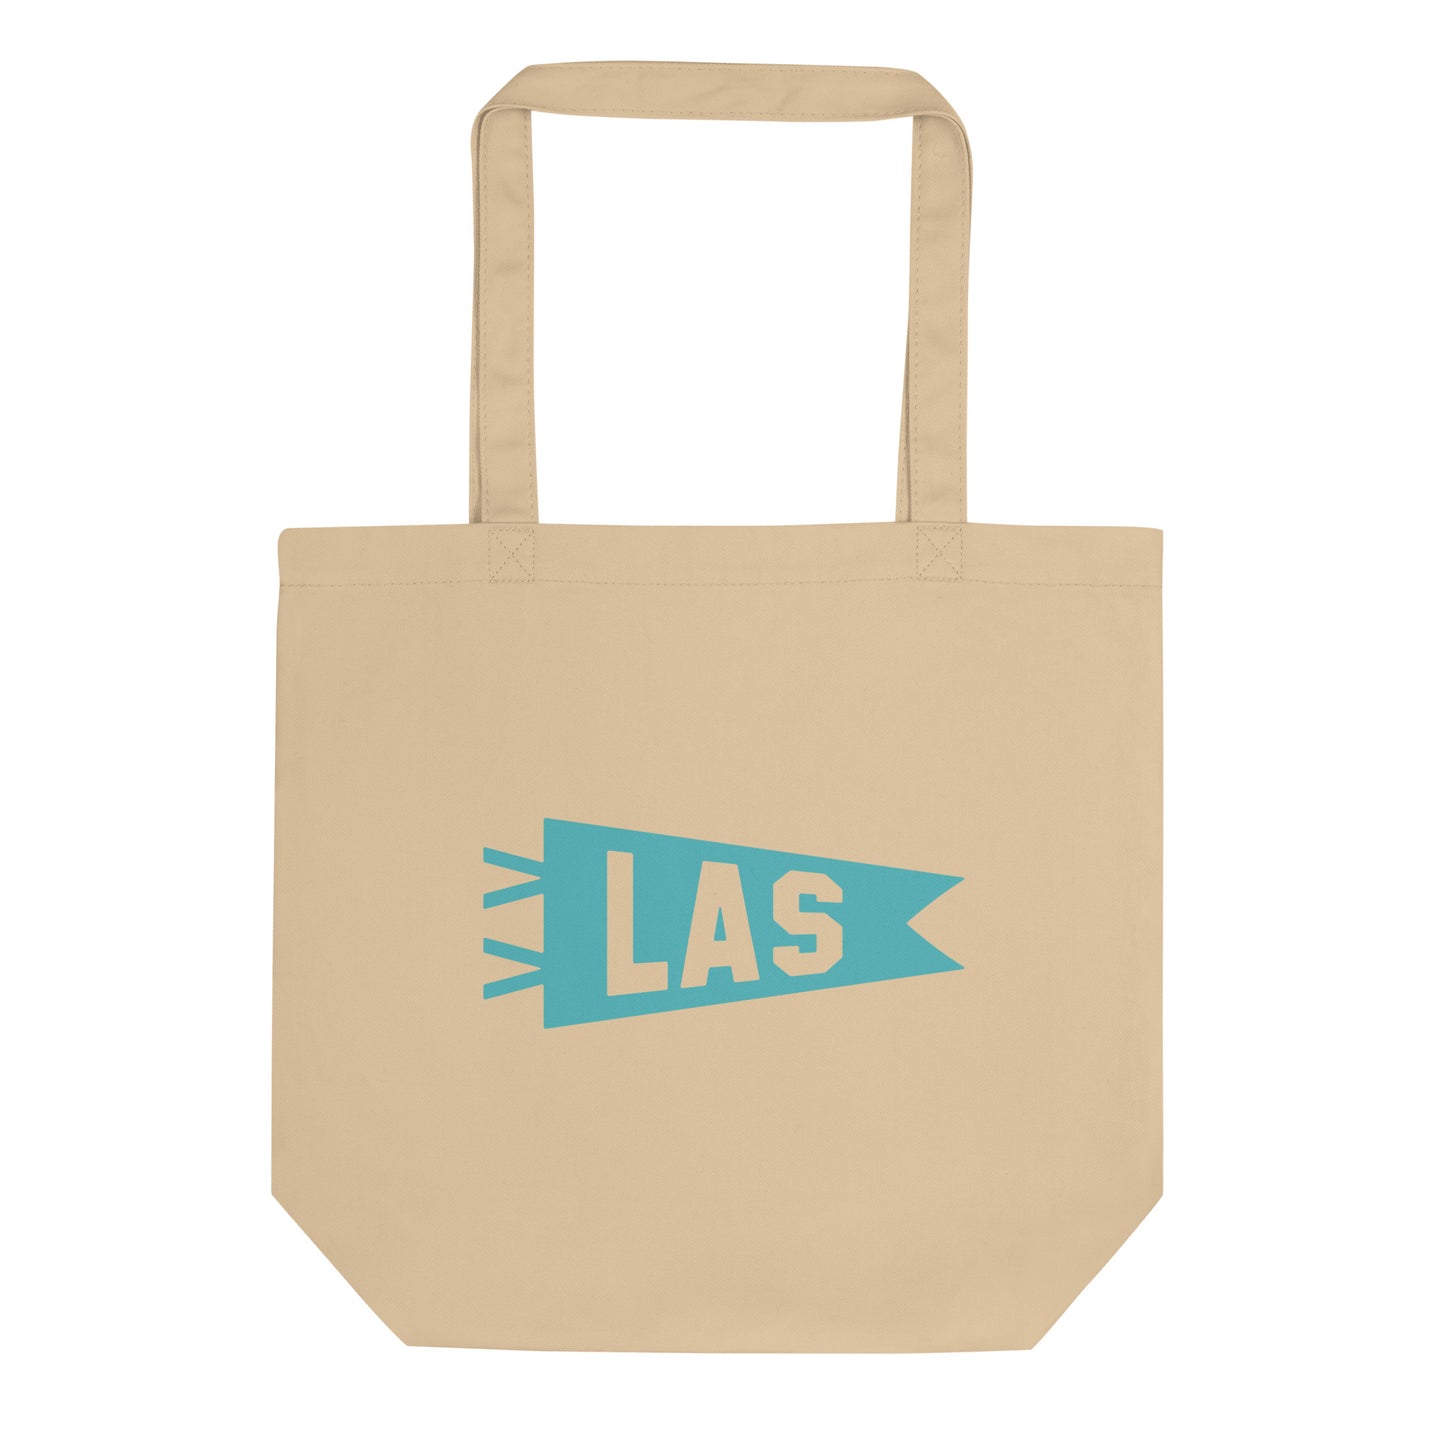 Cool Travel Gift Organic Tote Bag - Viking Blue • LAS Las Vegas • YHM Designs - Image 01